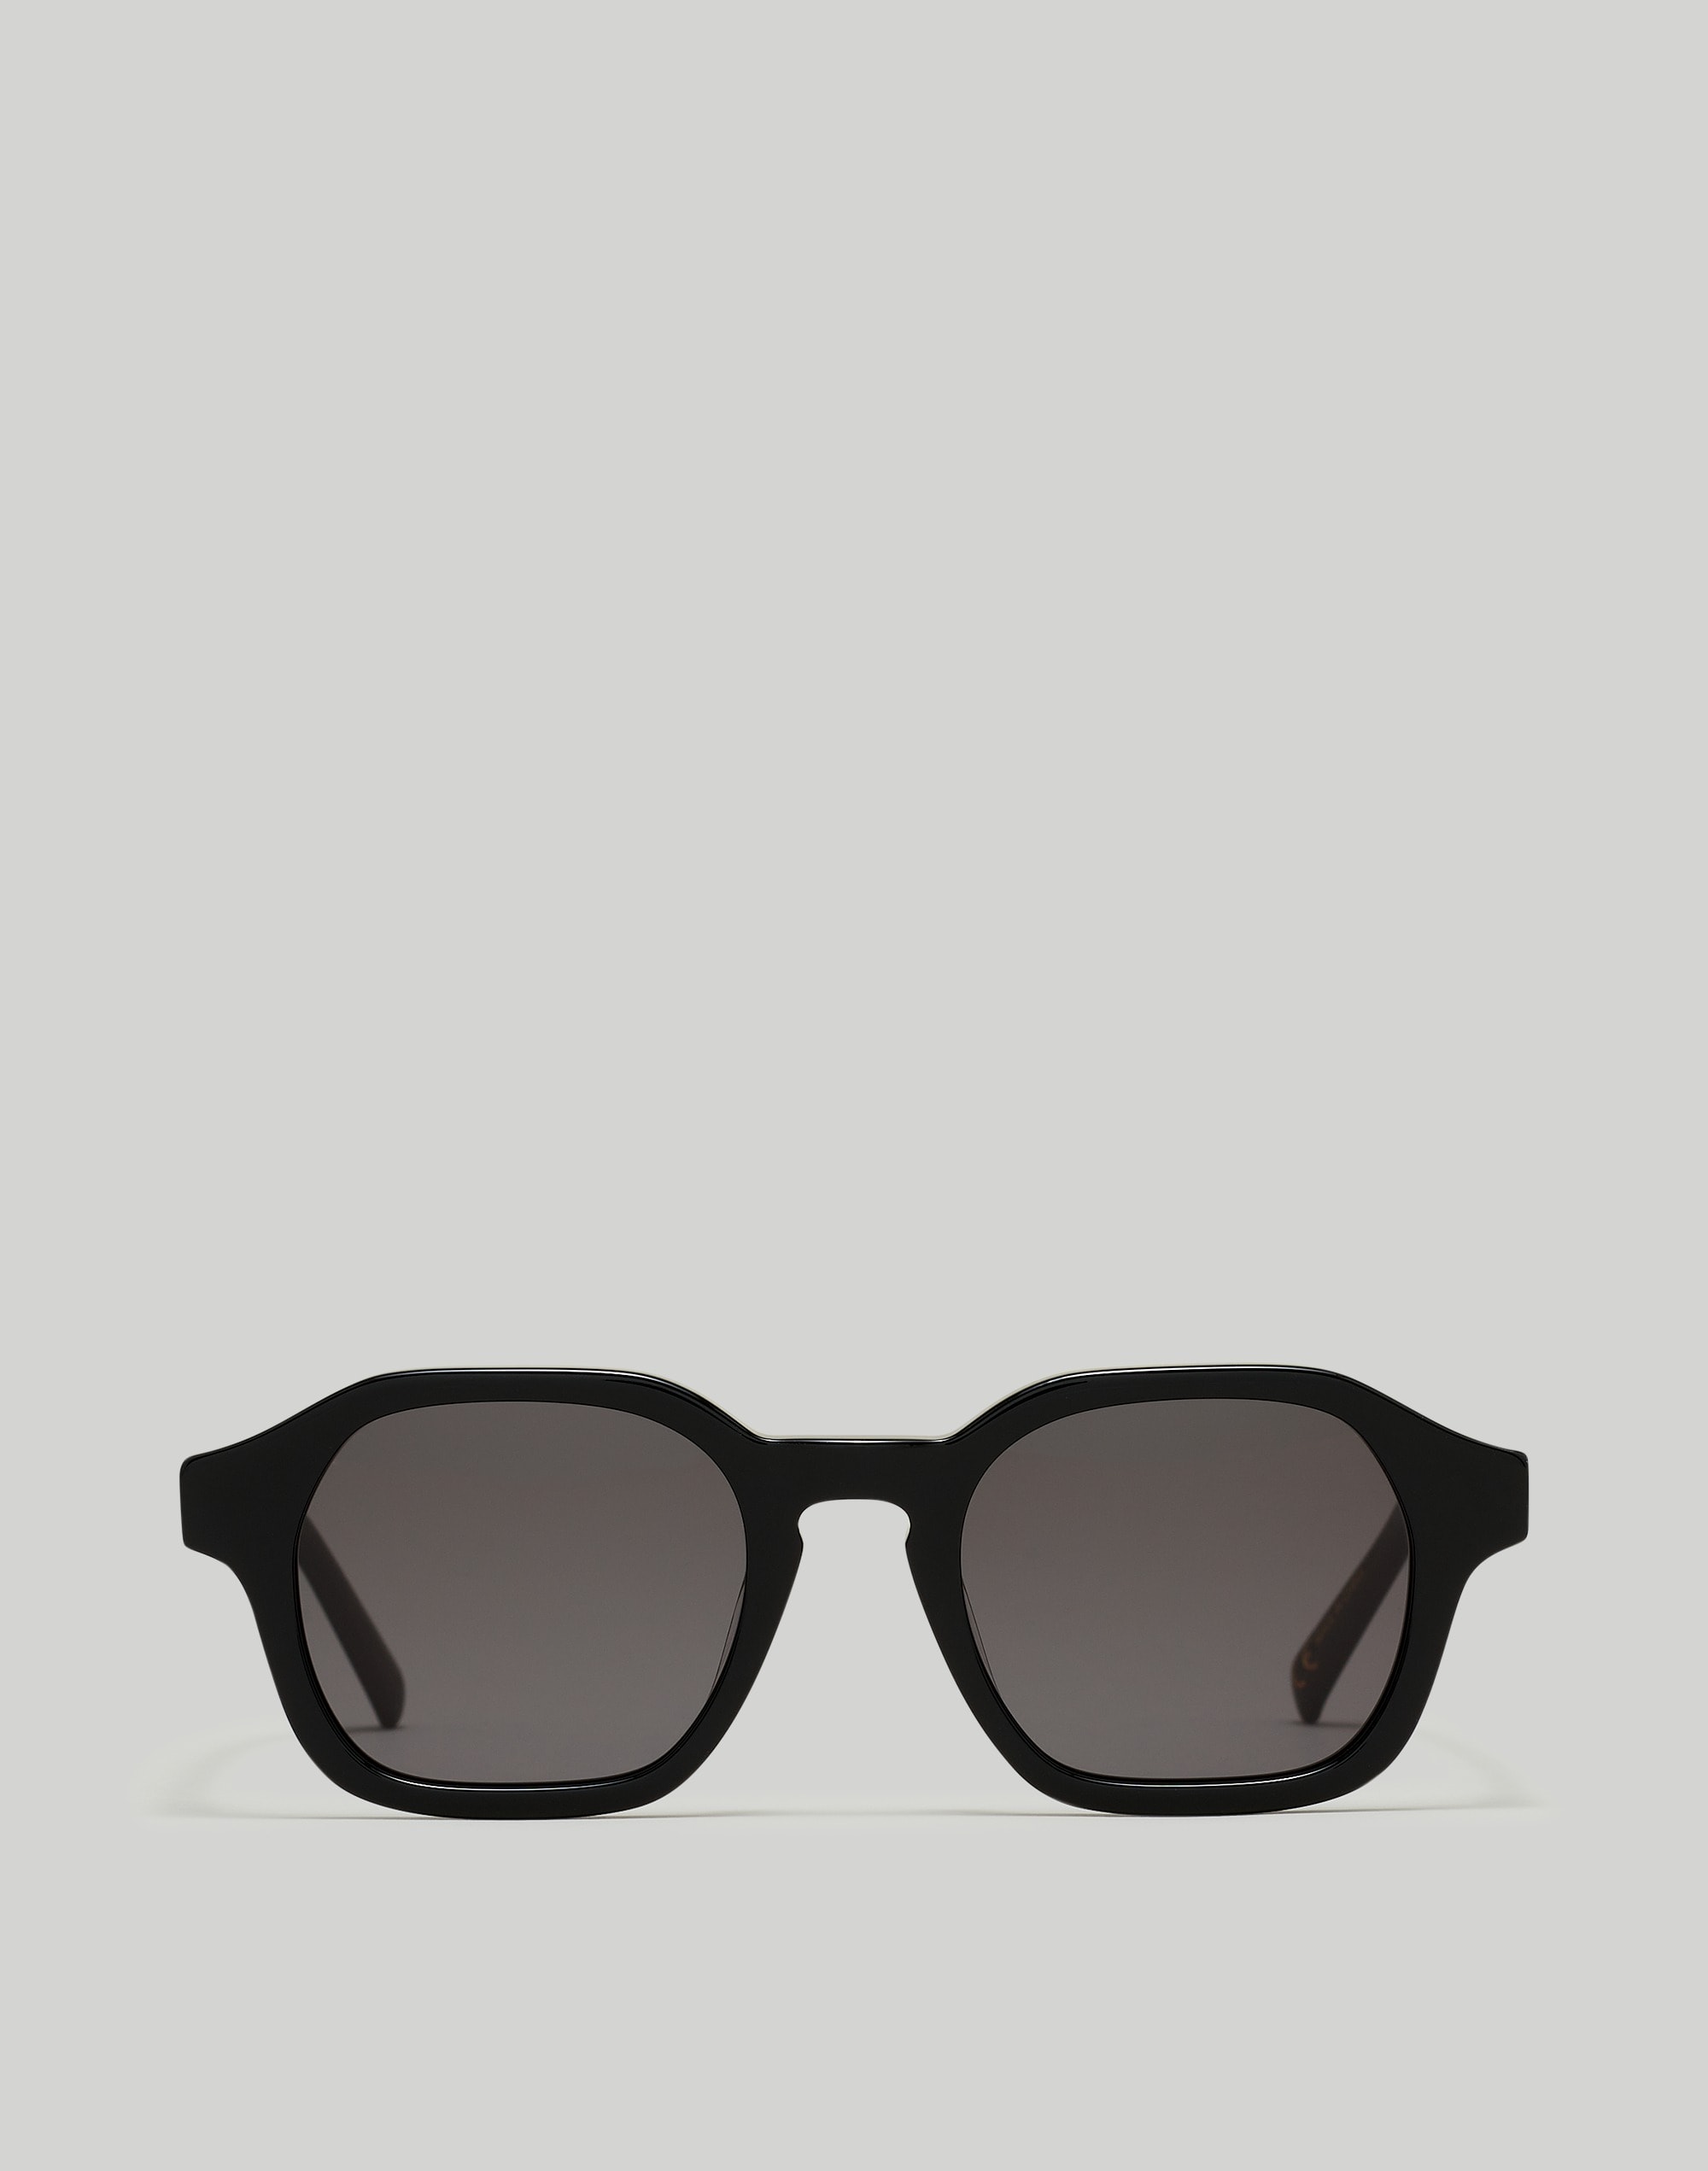 Mw Graphton Acetate Sunglasses In True Black